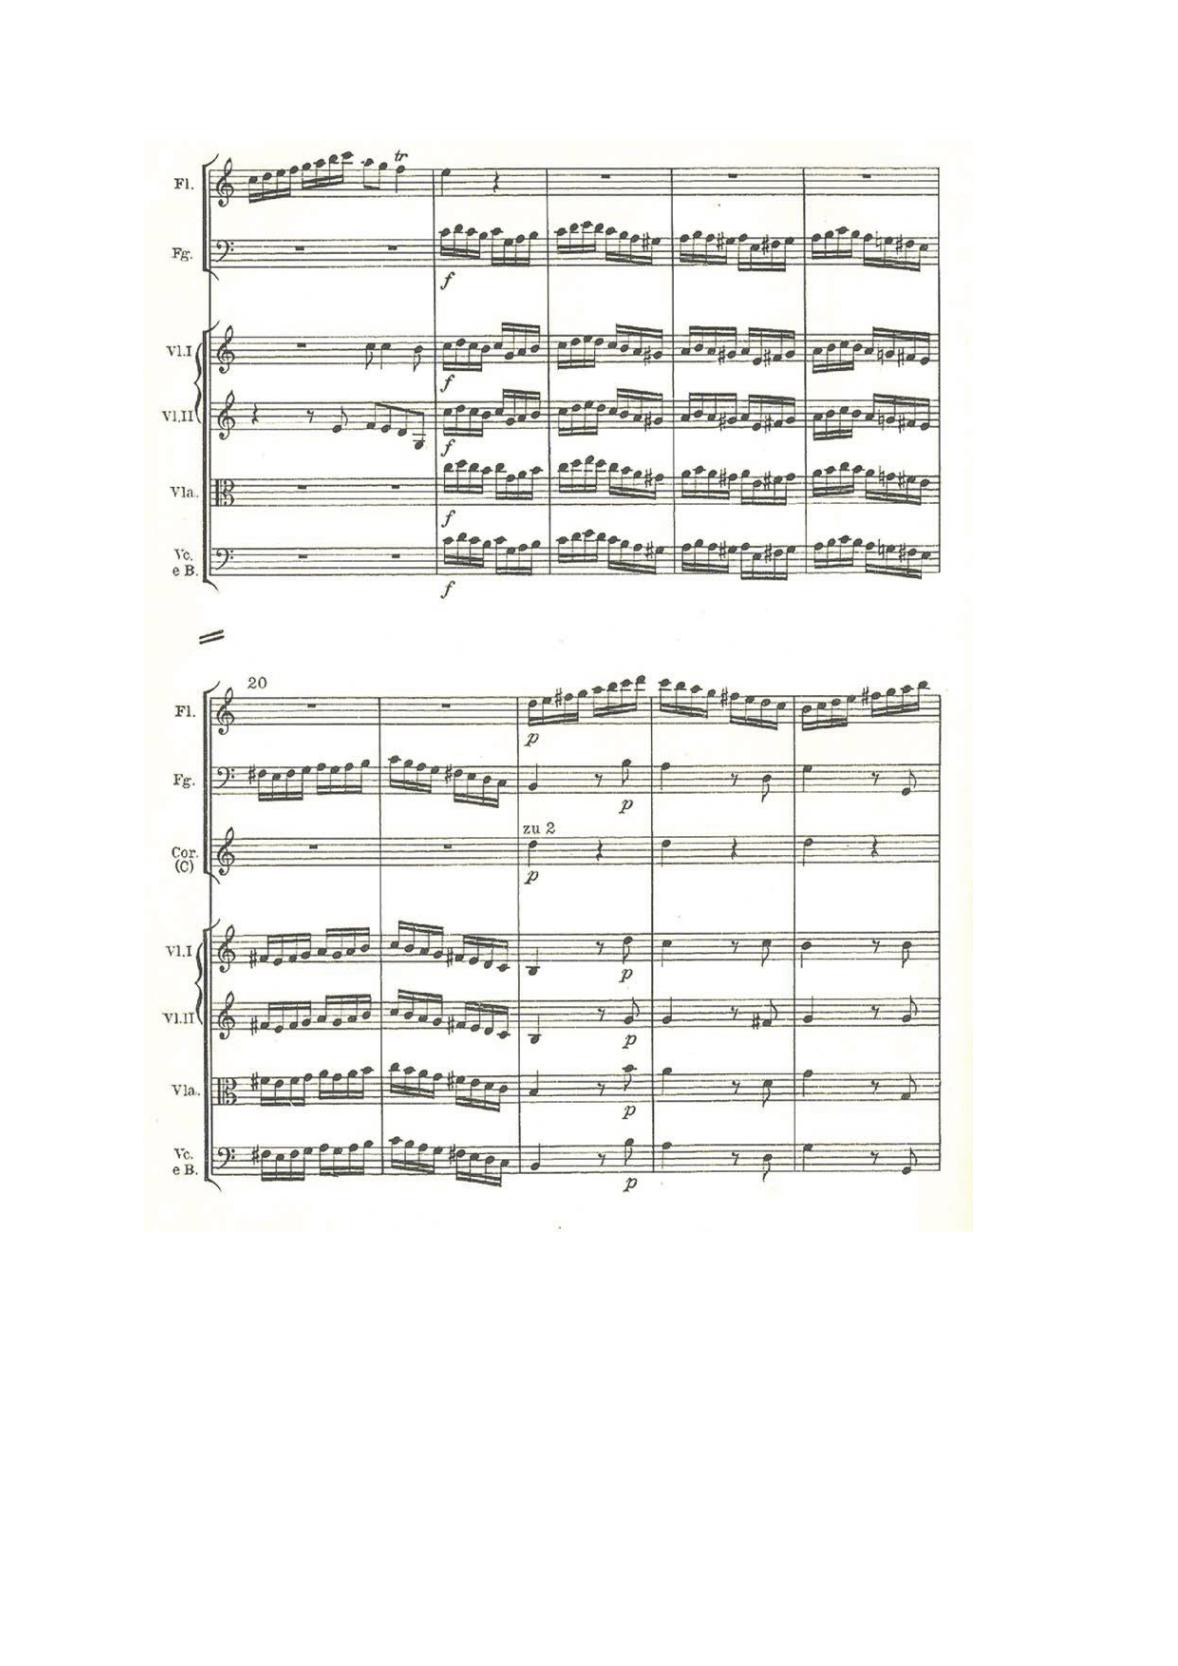 historia-muzyki-przykladowe-nuty-poziom-rozszerzony-matura-2014-str.8